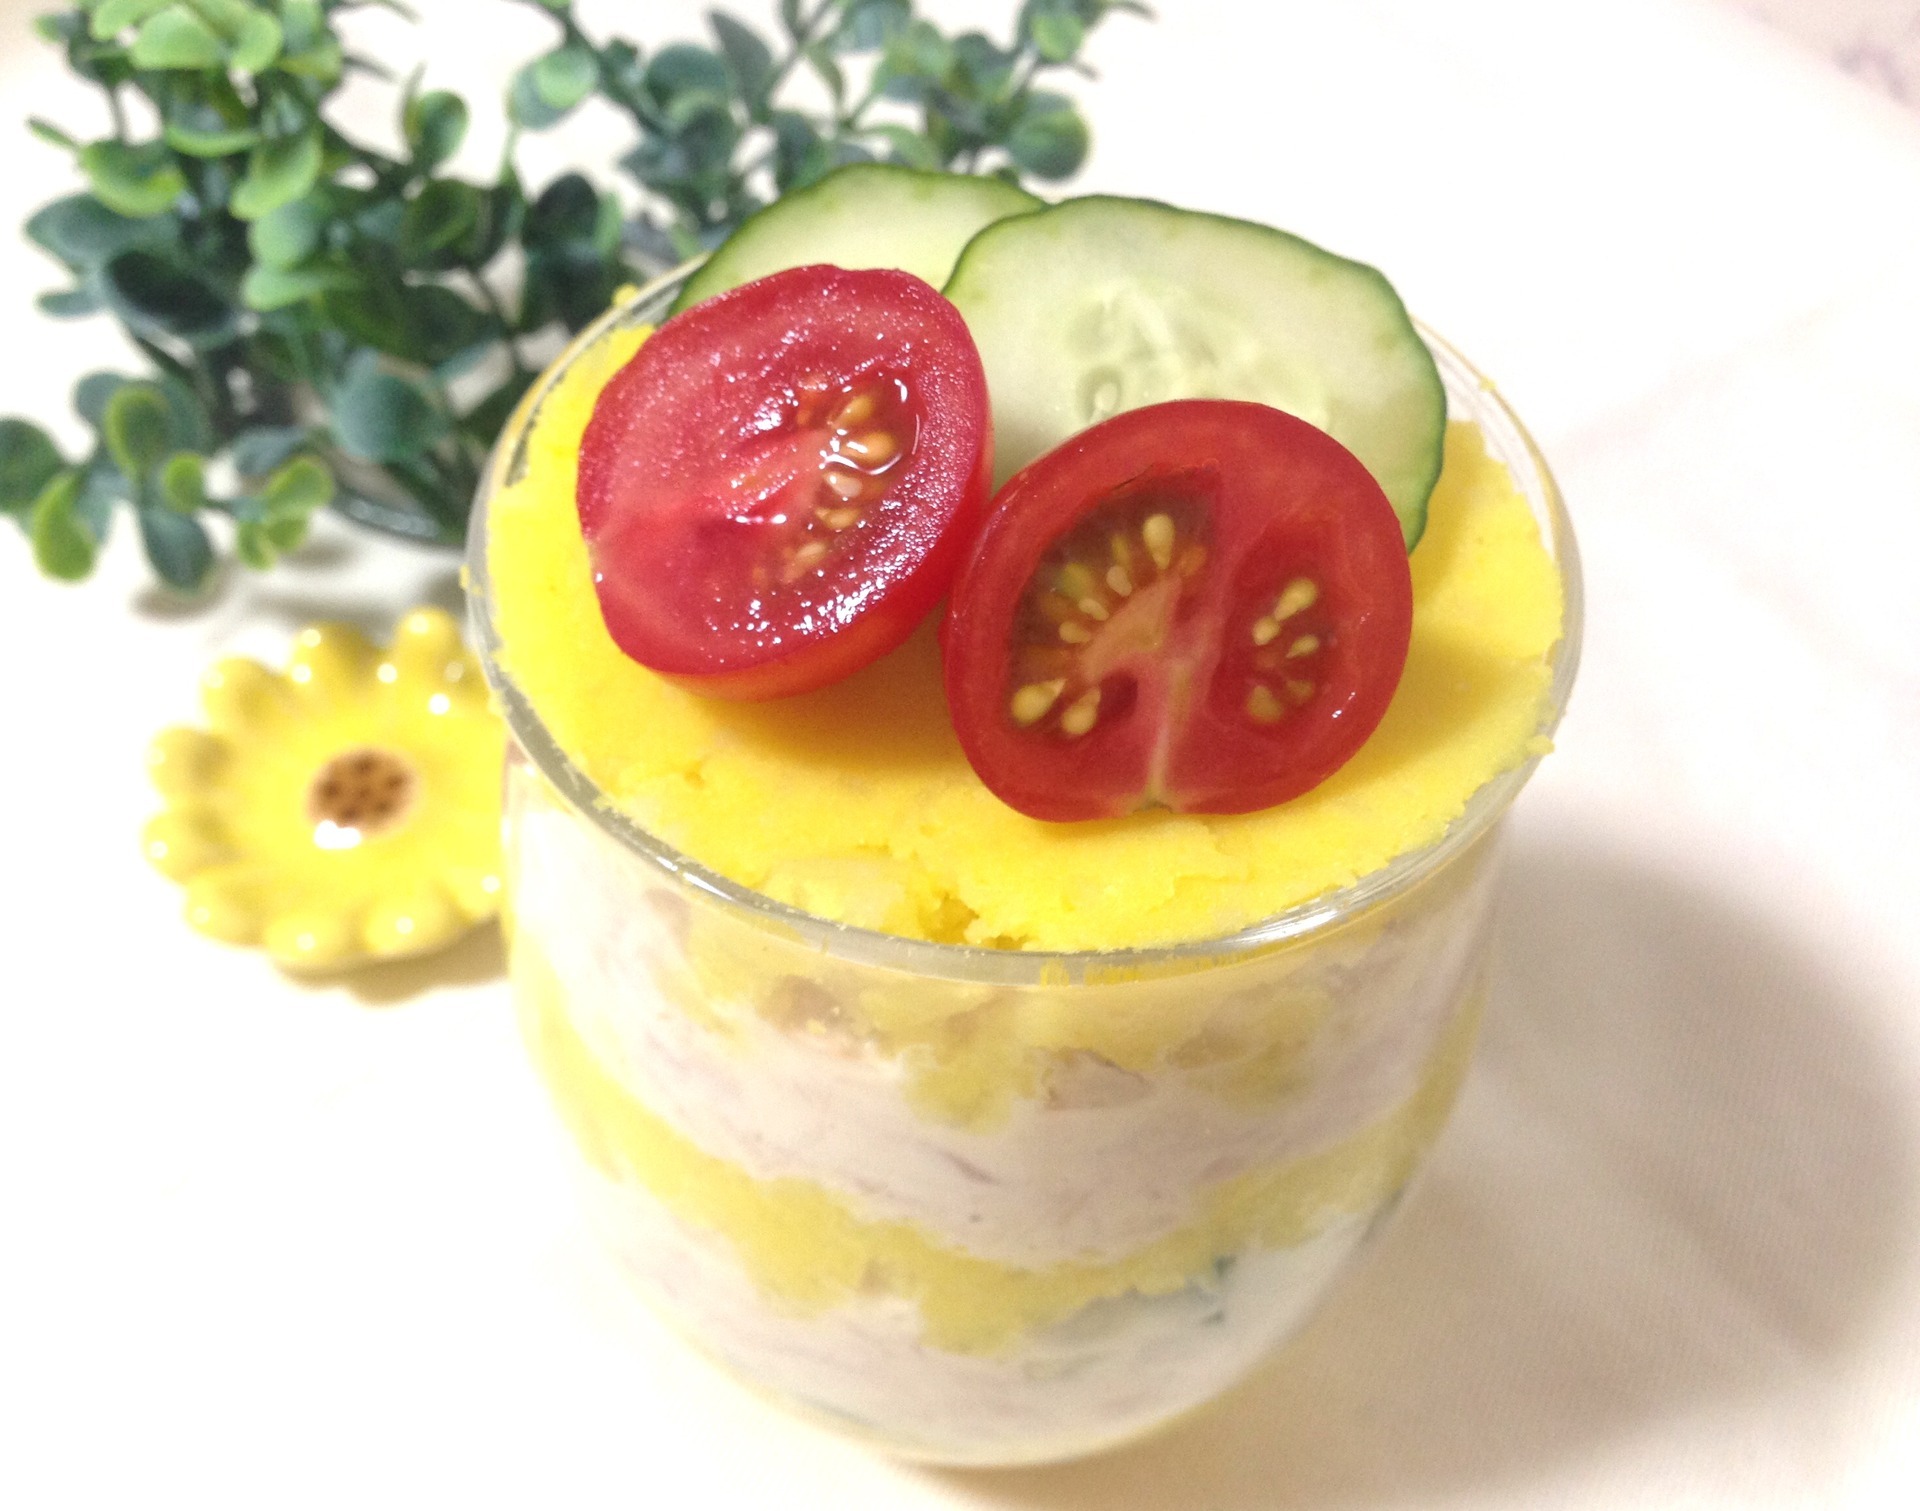 管理栄養士 永吉みねこ公式ブログ お野菜たっぷり簡単ごはん 管理栄養士のお家飲みレシピ 簡単 ペルー料理 カウサのパフェ